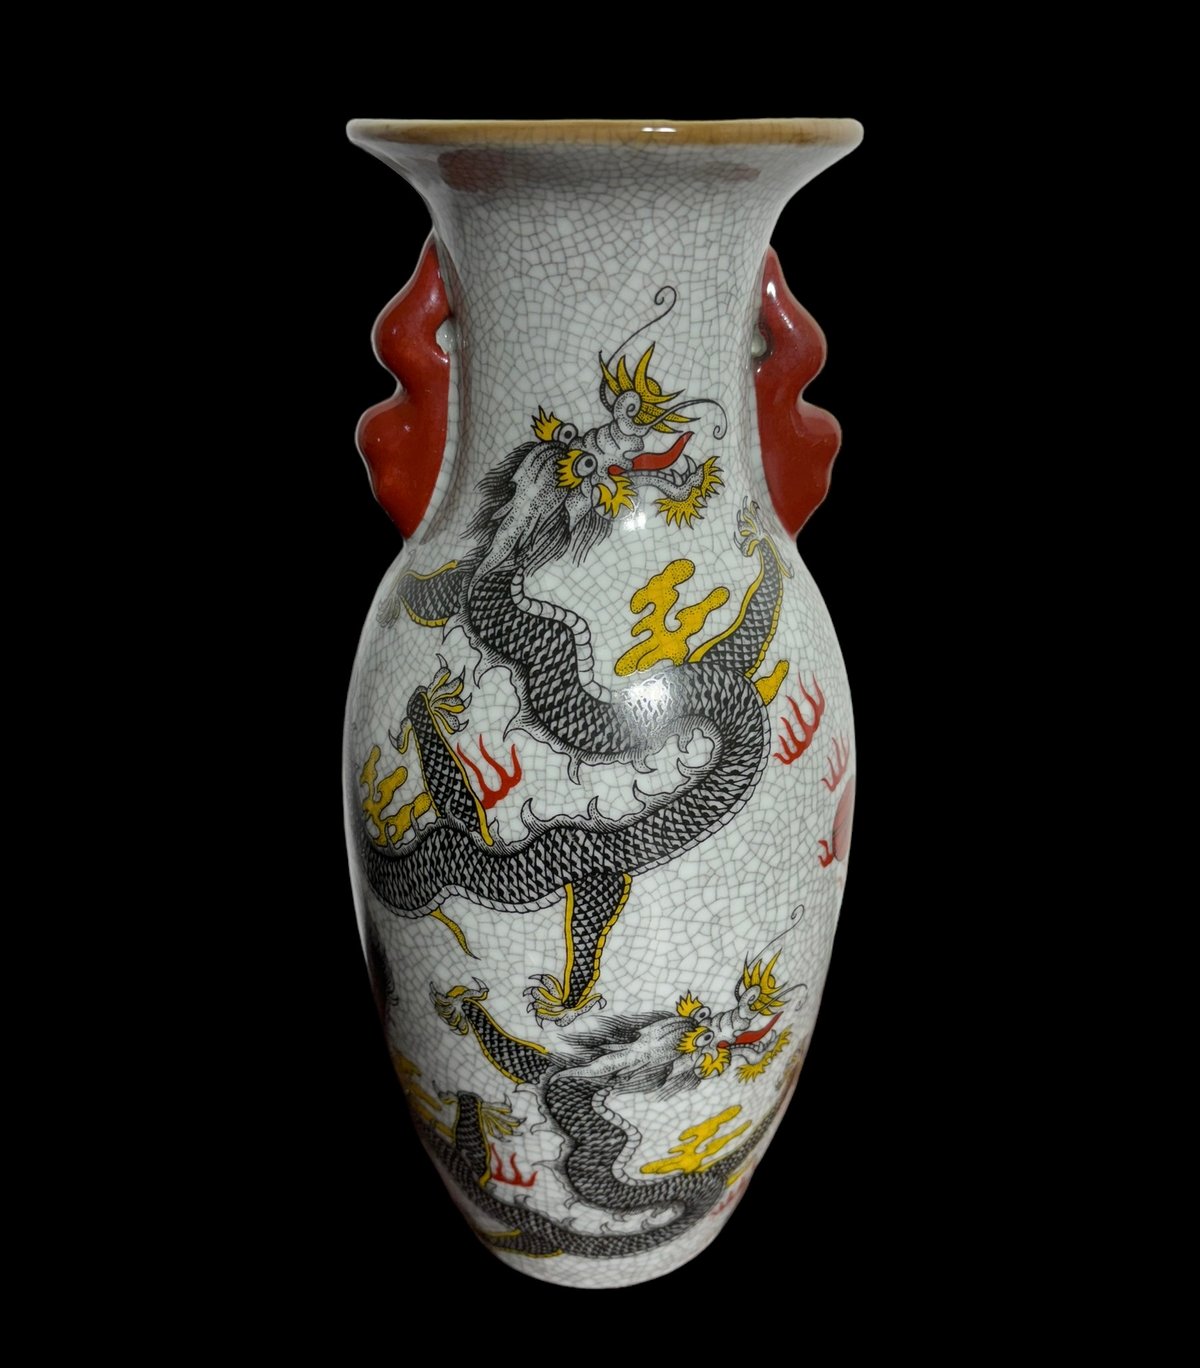 壺 [黒龍] 丸形 中国雑貨 龍 ドラゴン フラワーベース 花瓶 花入れ 花器 陶器 古美術 骨董品